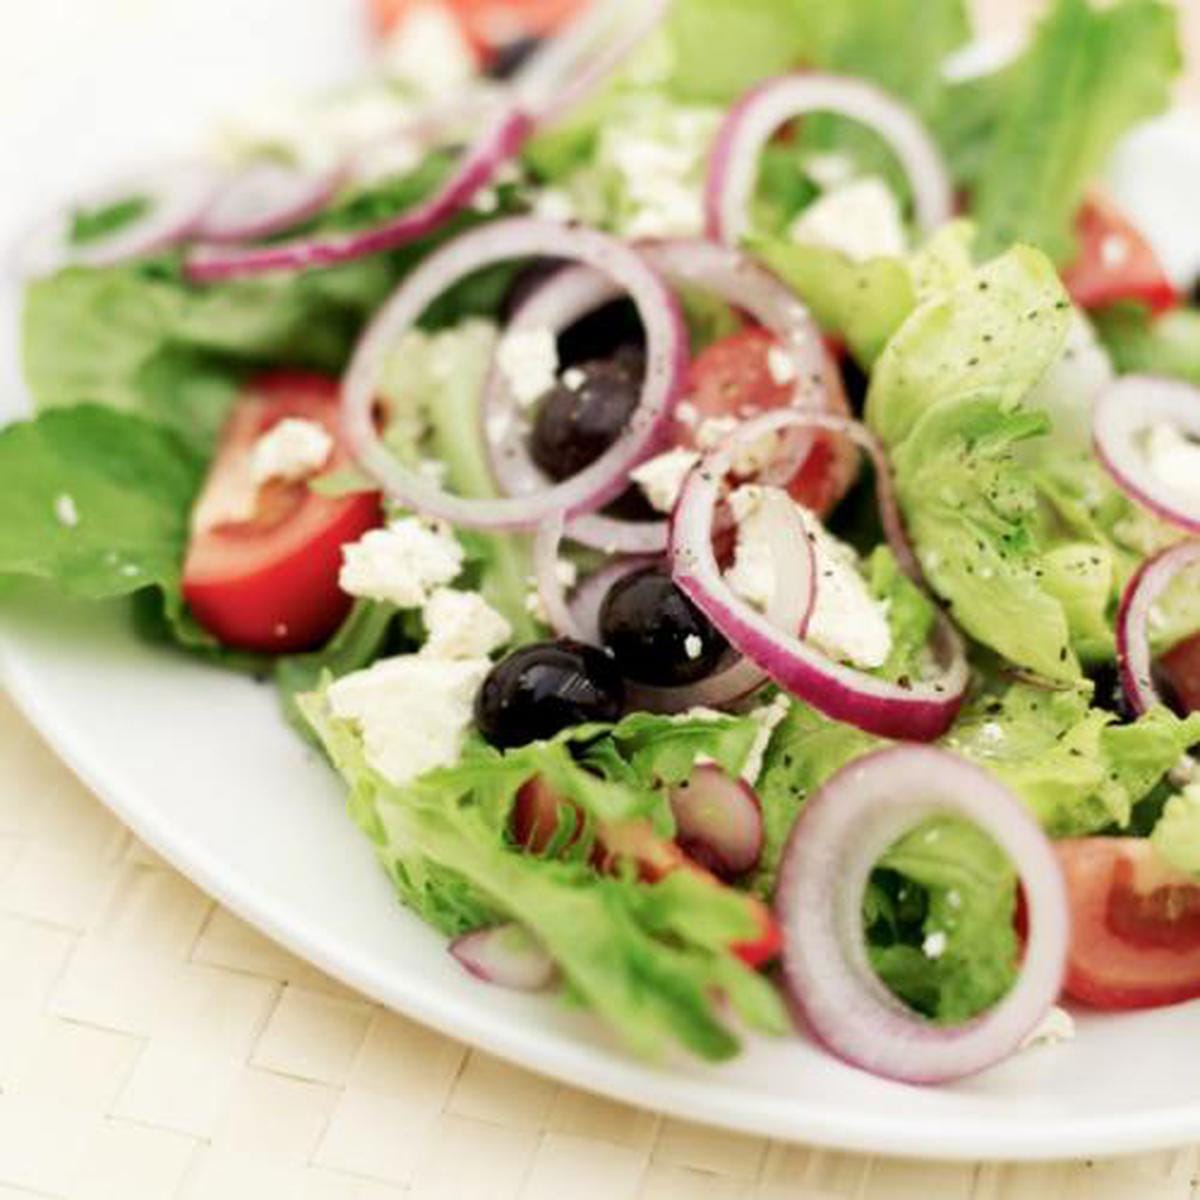 salate dietetice pt. slabit